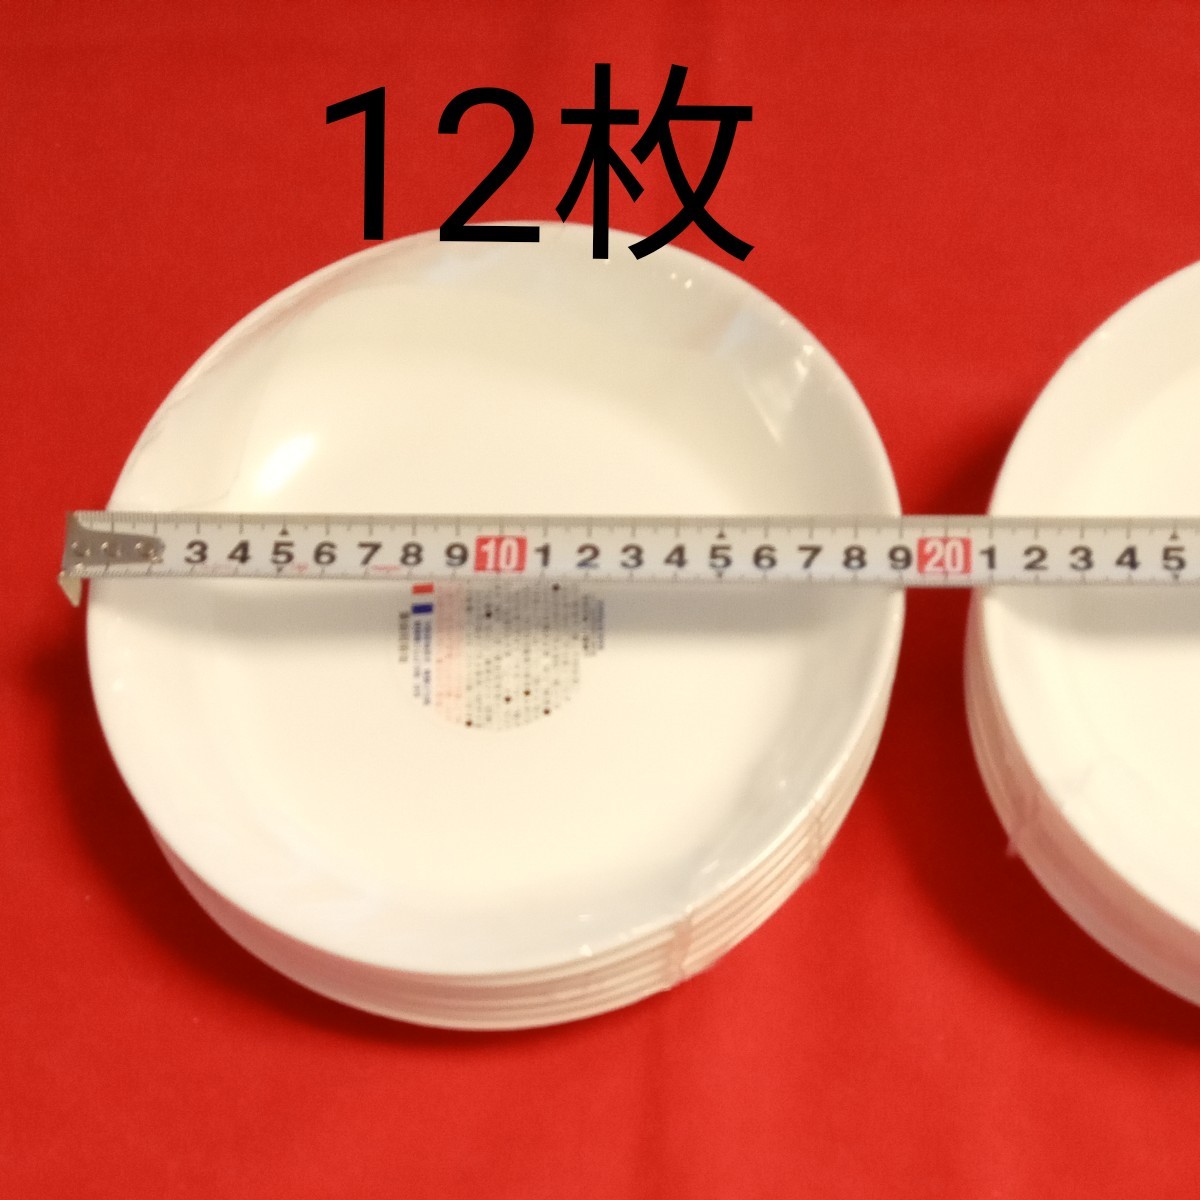 12枚ヤマザキ春のパンまつり 強化ガラス 白いお皿 フランス製 直径19cm 2015ヤマザキ パン祭り 春のパンまつり